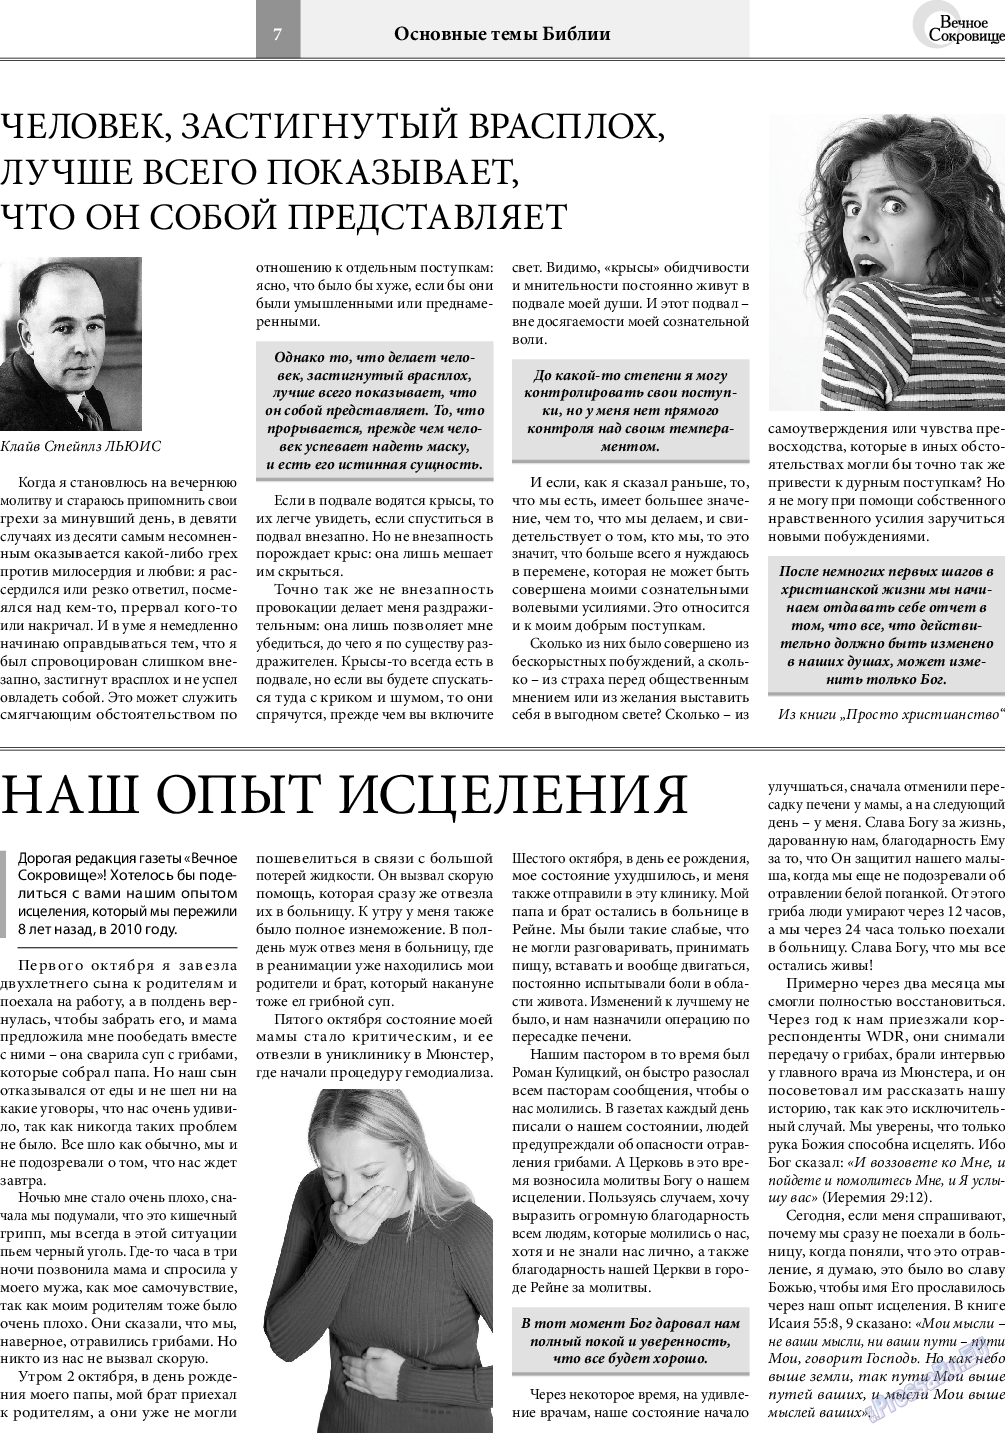 Вечное сокровище, газета. 2018 №6 стр.7